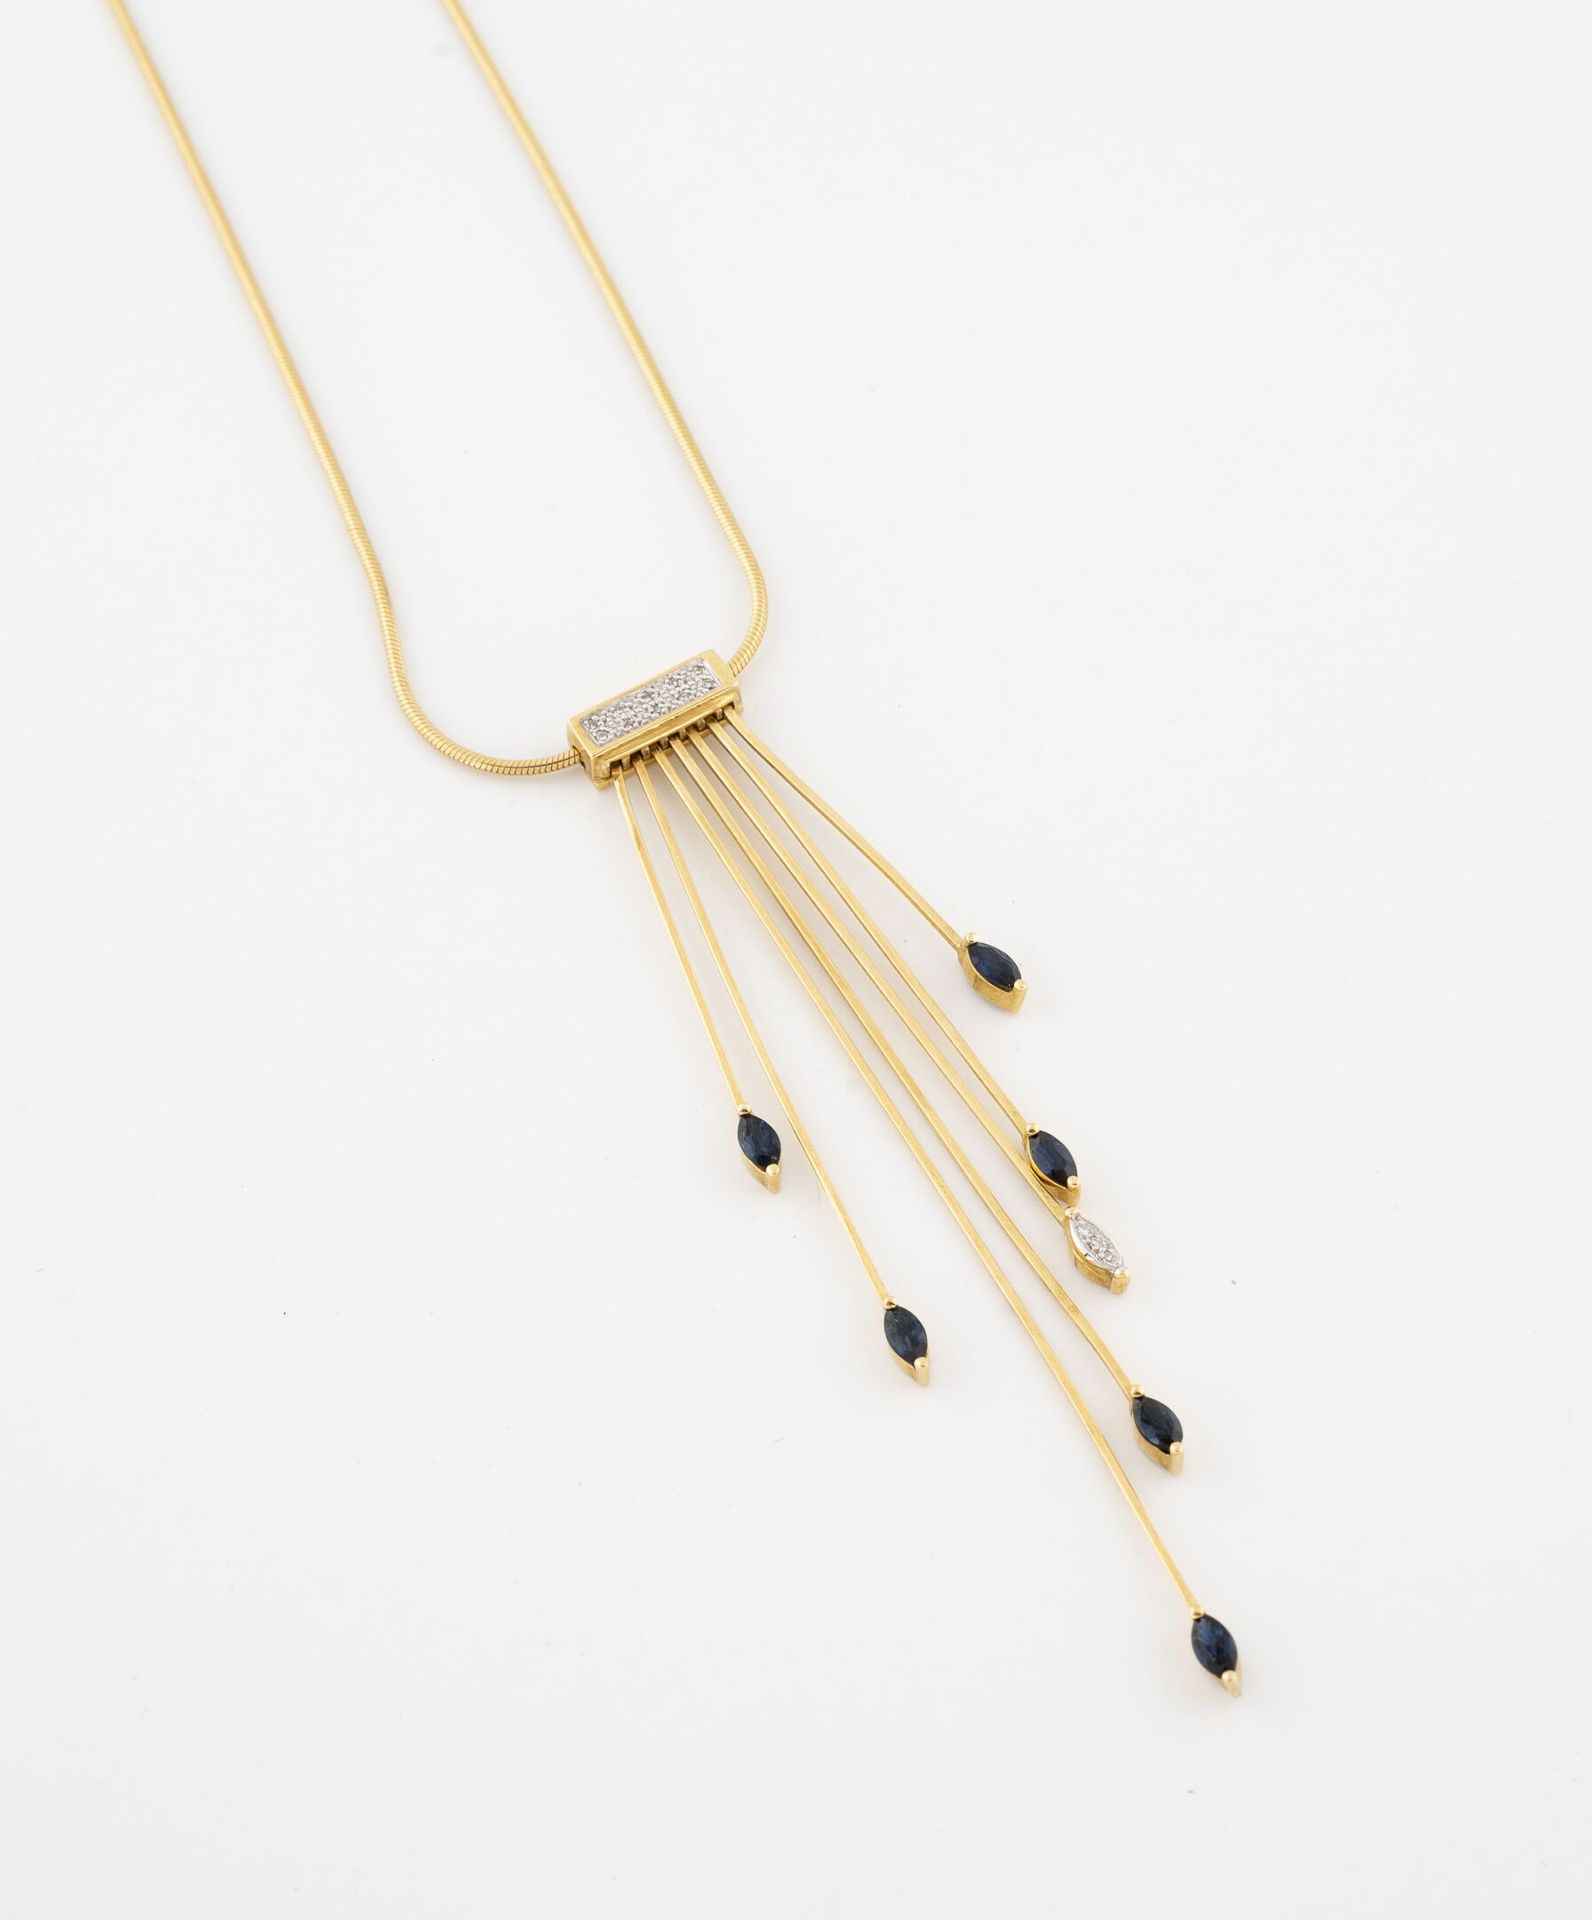 Null 黄金（750）现代主义项链，蛇形网眼，领口装饰有七条射线，上面点缀着脐带蓝宝石和小钻石，采用纹路和爪子镶嵌。

扣子。

毛重：12.3克。- 长度：&hellip;